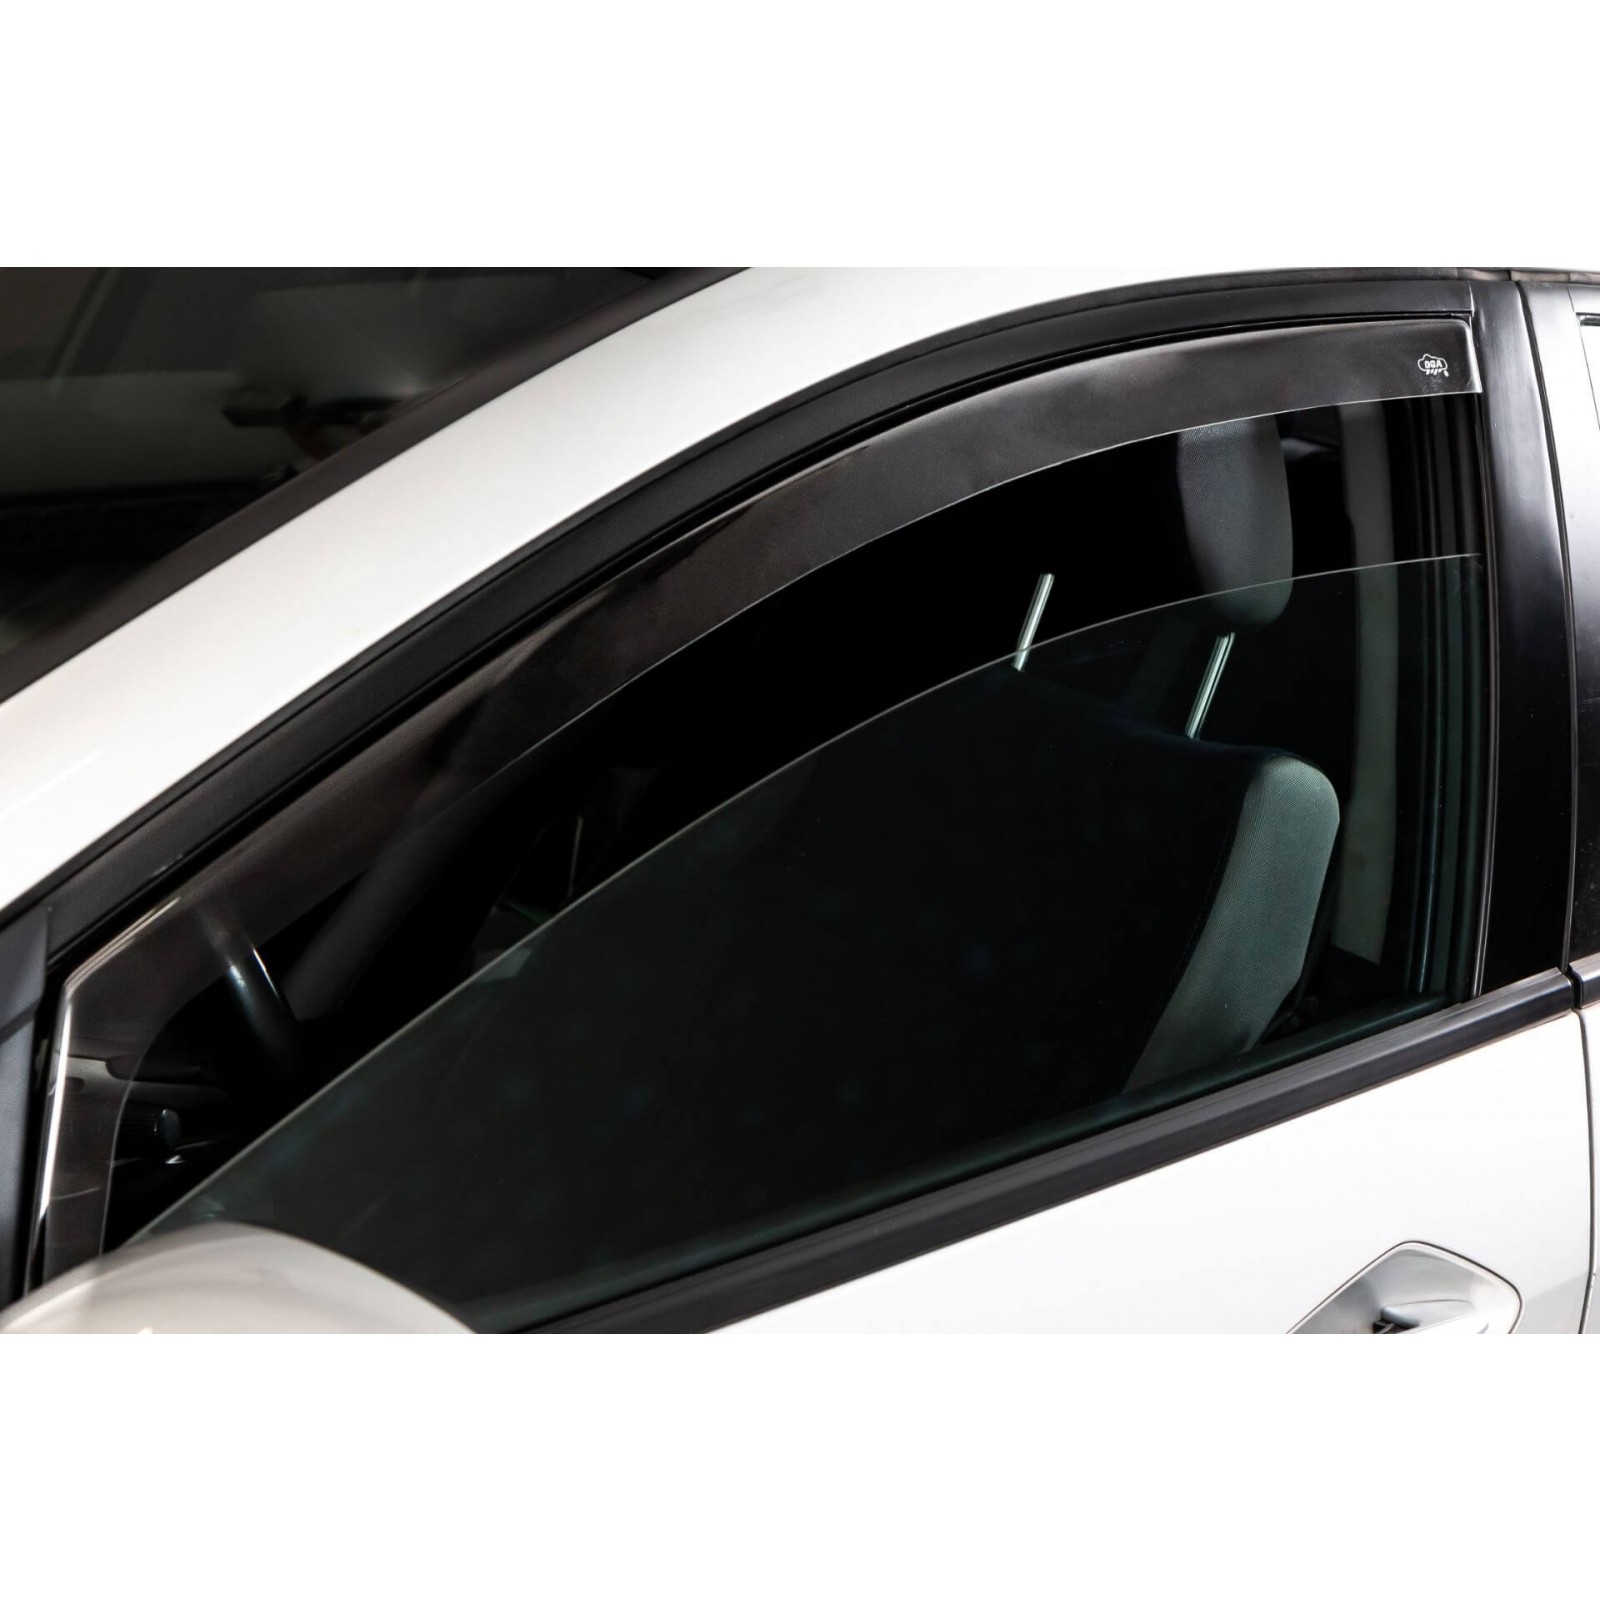 KDLLK per Volkswagen T6 Transporter Caravelle 2015 2019 Deflettore per finestrino Laterale Parabrezza per finestrino per Auto Visiera per Porta Parasole Parapioggia